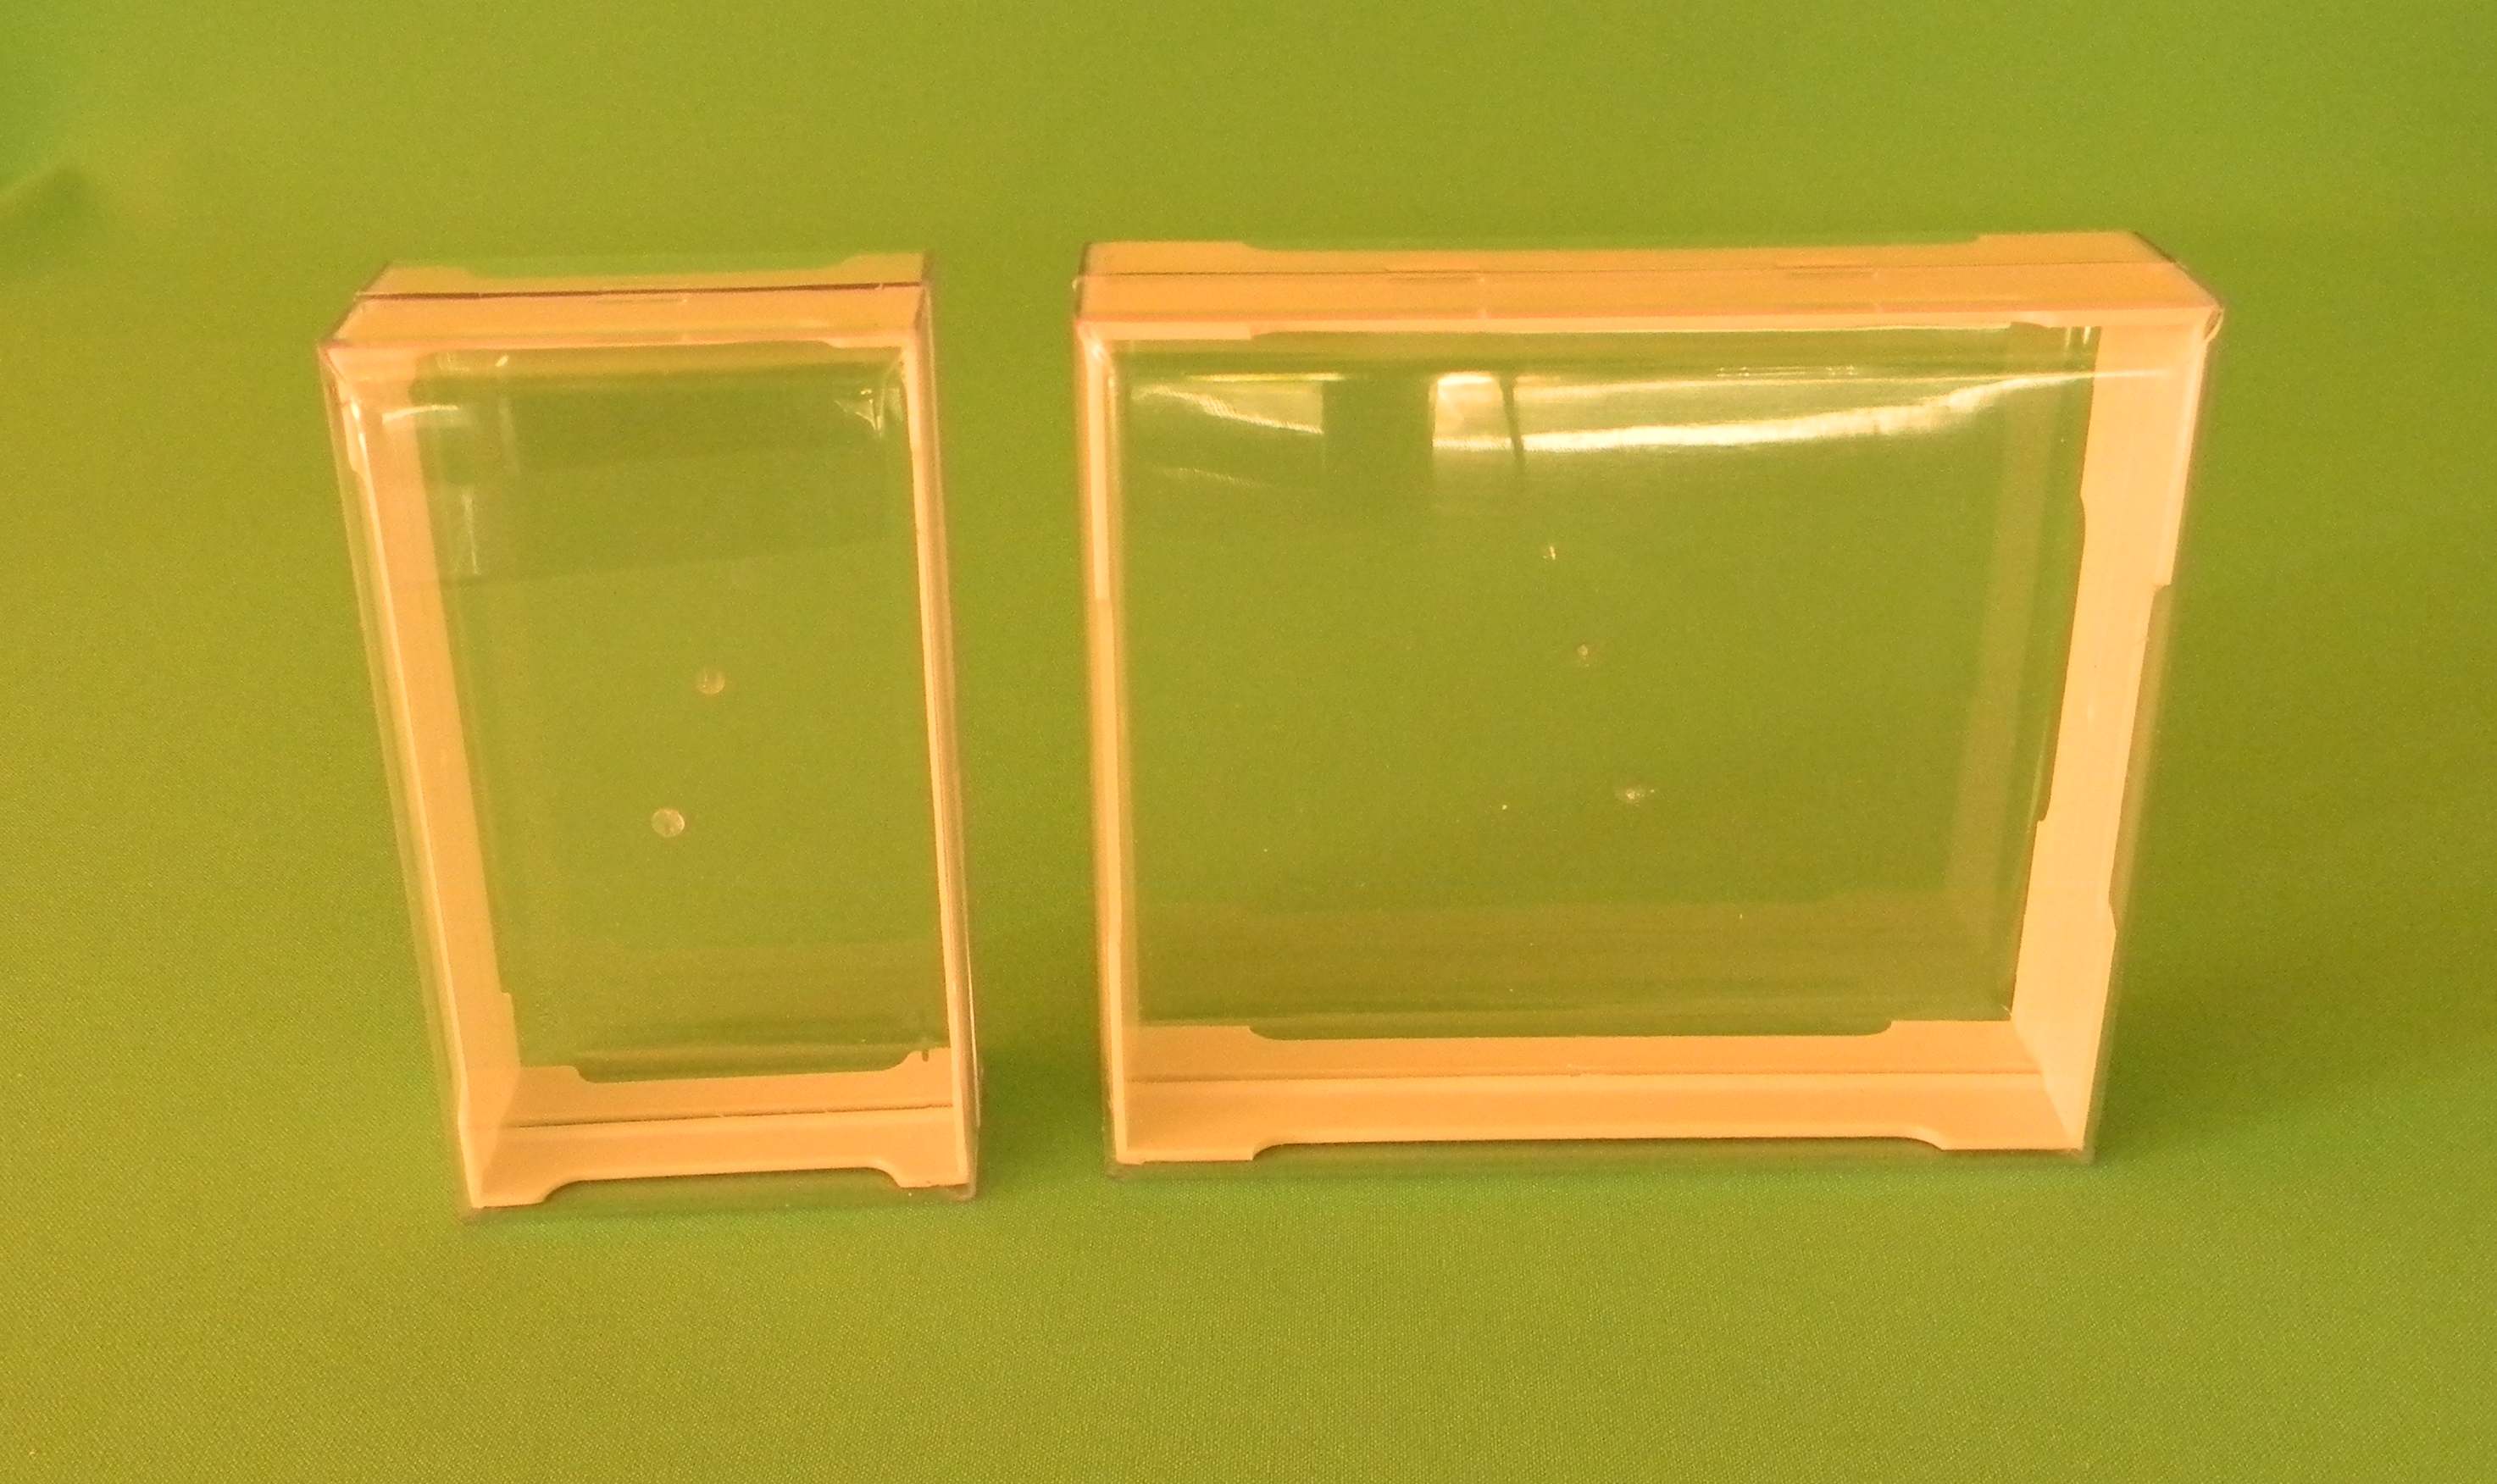 Рамки (минирамки) для секционного сотового меда с контейнерами (коробочками) из прозрачного полистирола